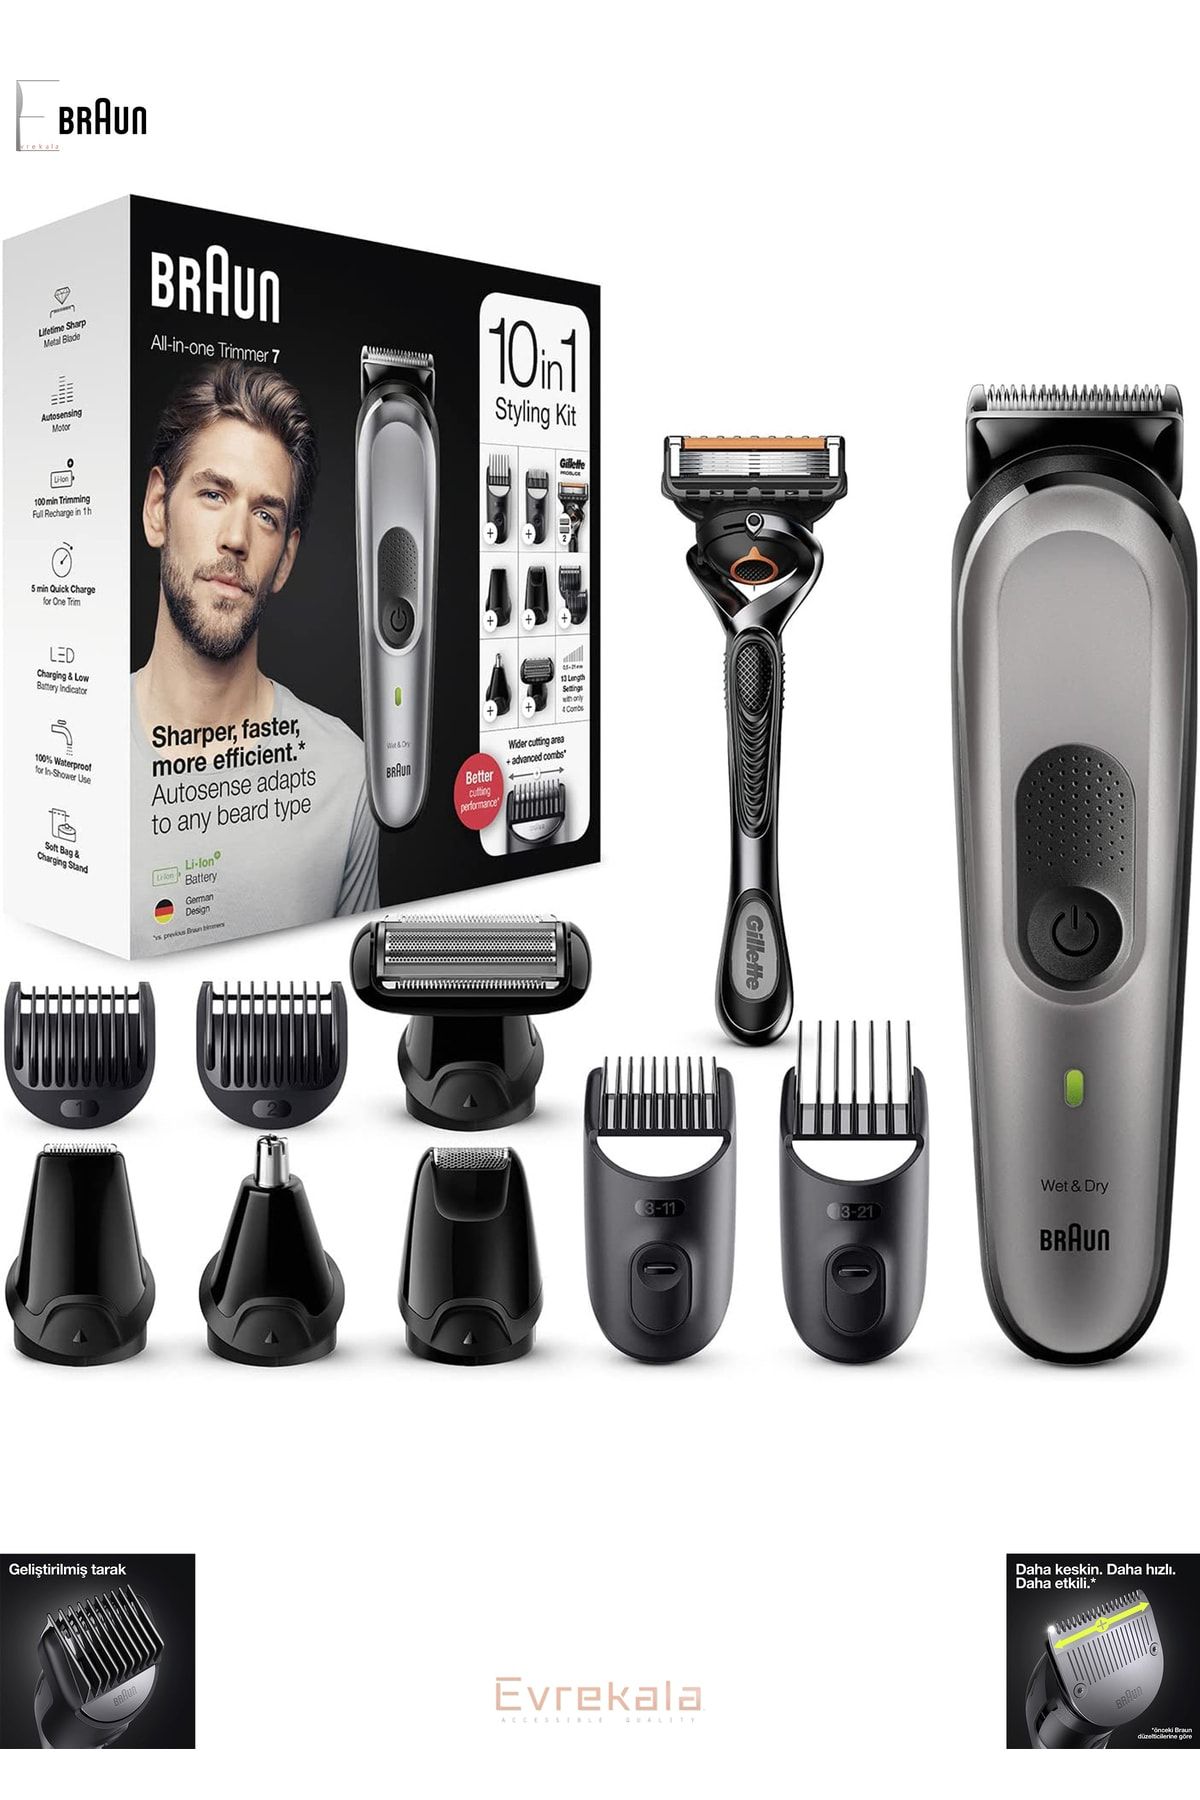 Braun Evrekala Shop Tıraş Makinesi Saç-sakal-vücut Bakım Seti 10 In 1 Ve Gilette